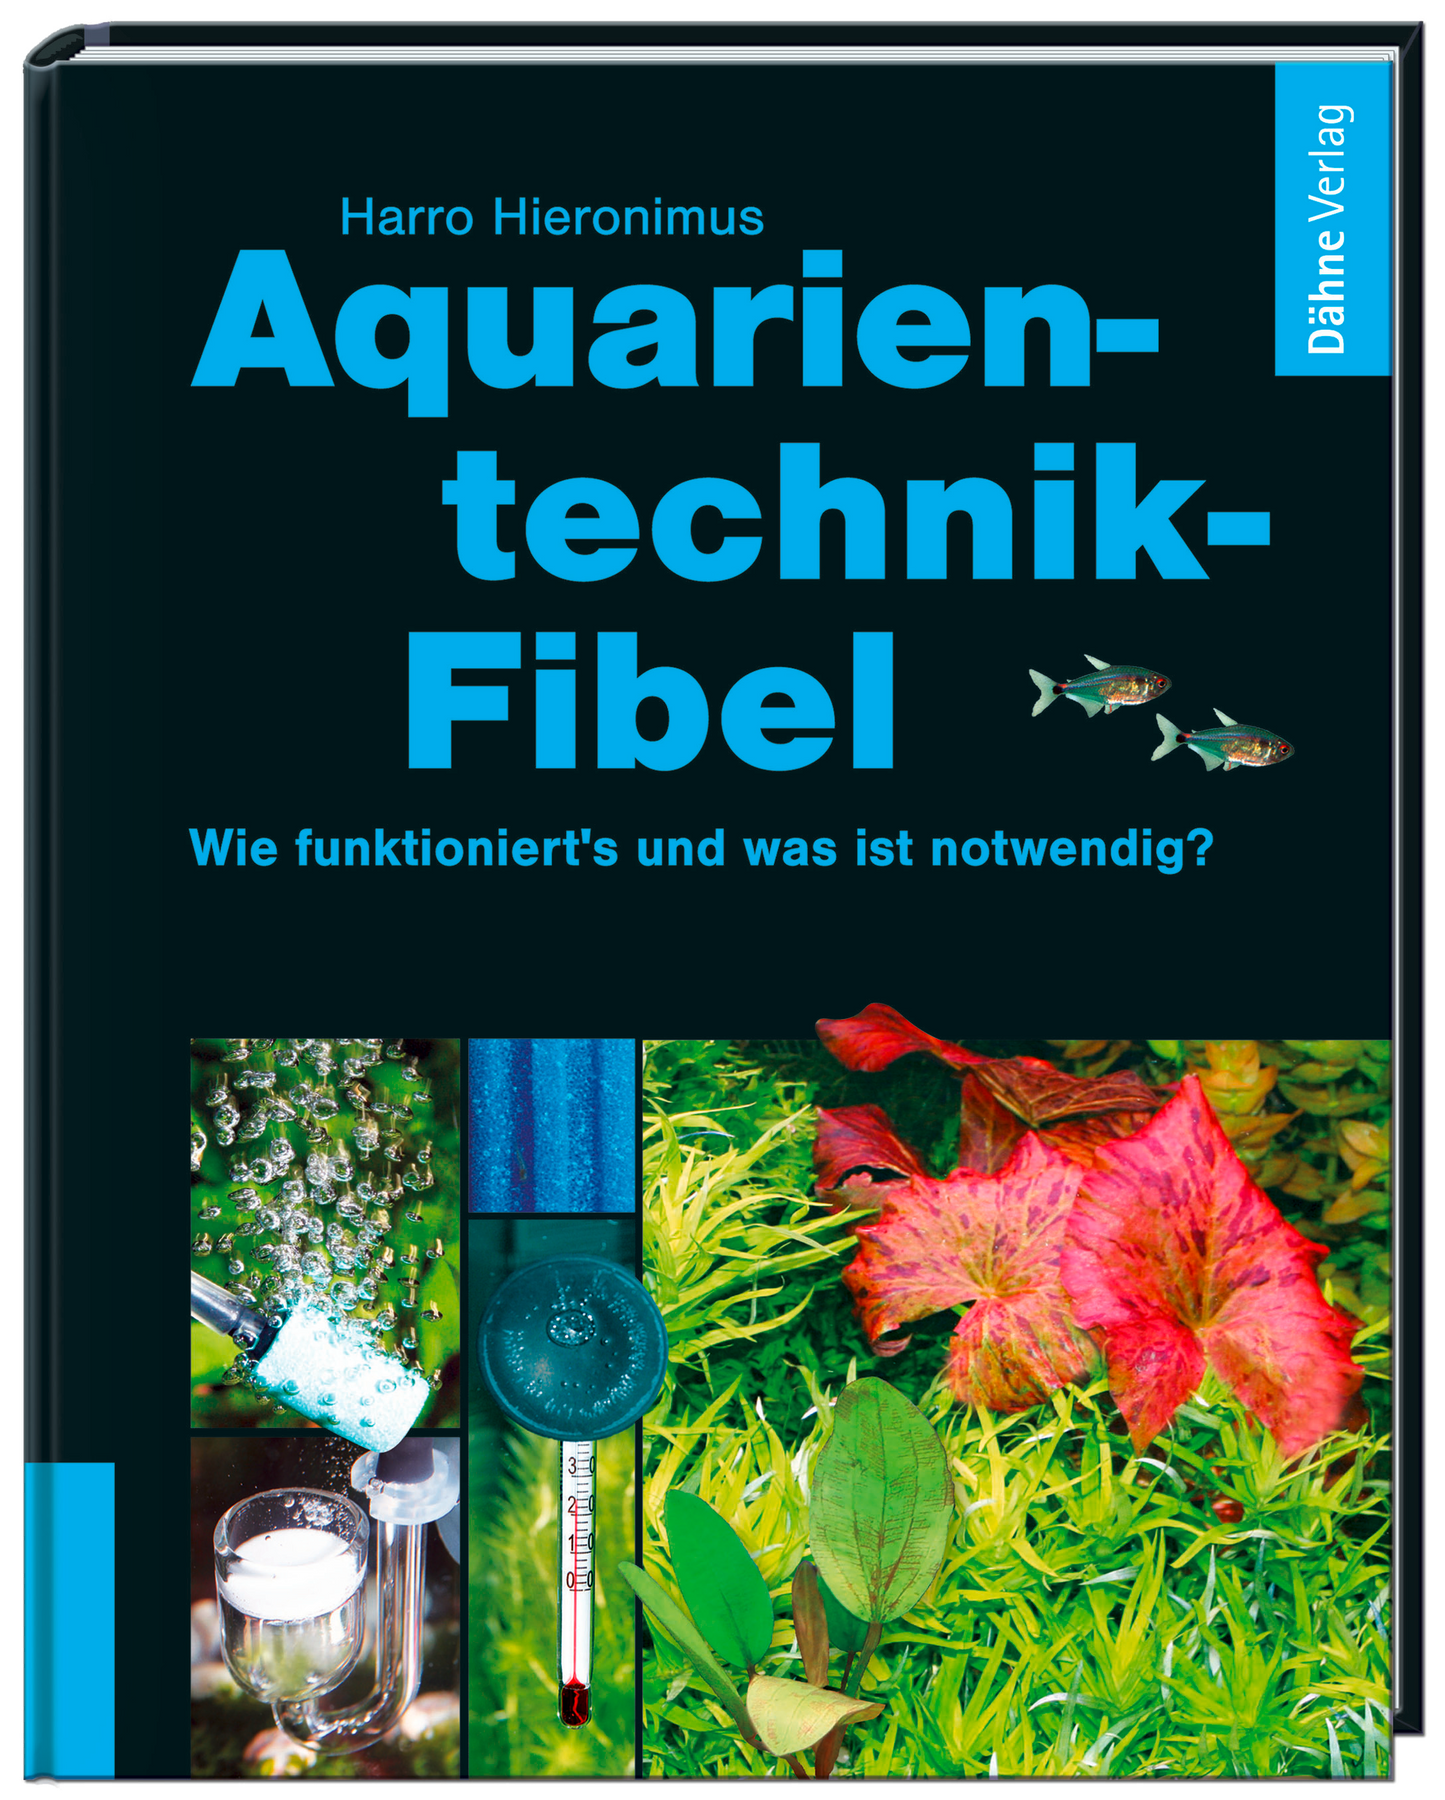 Aquarientechnik-Fibel